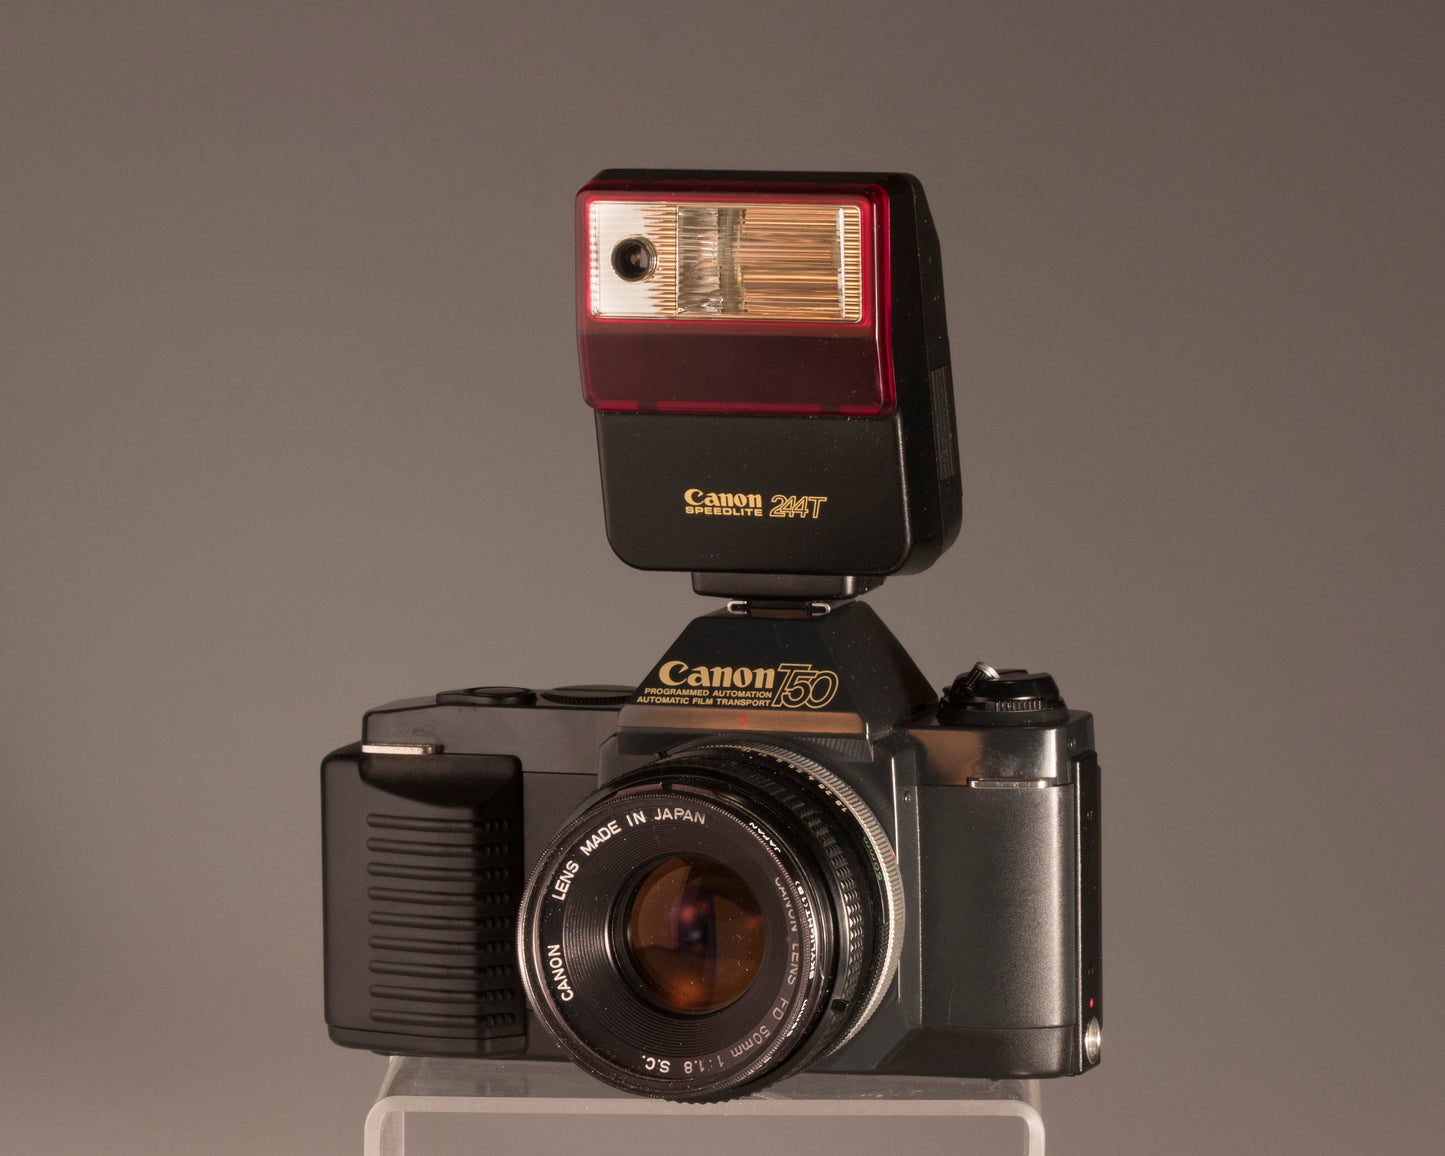 Canon T50 camera + Speedlite flash